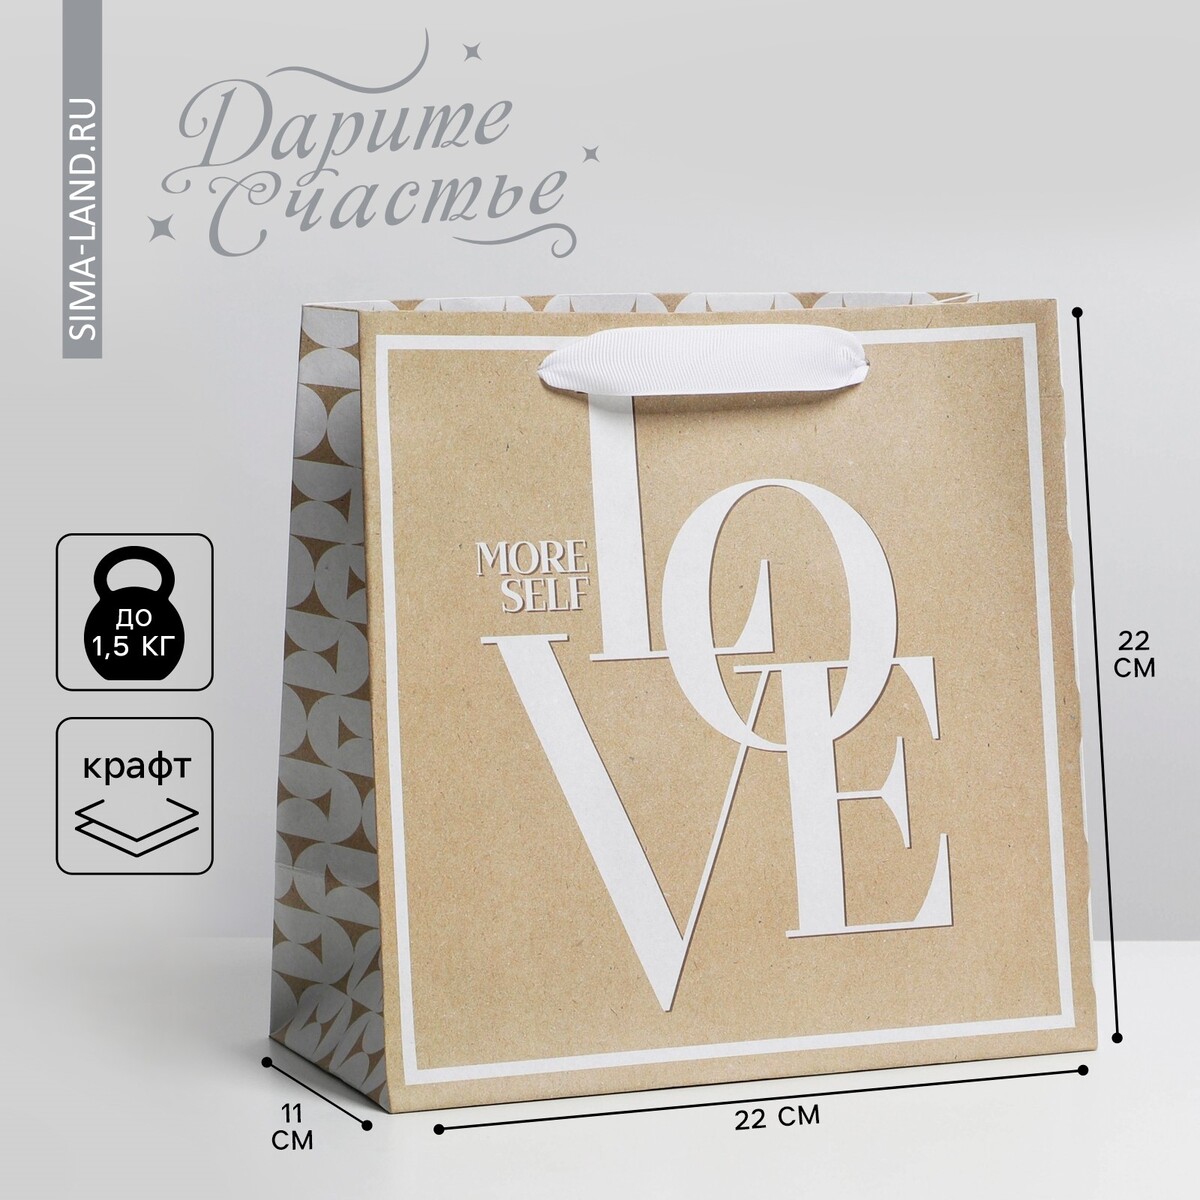 Пакет подарочный крафтовый квадратный, упаковка, пакет крафтовый квадратный beautiful 14 × 14 × 9 см